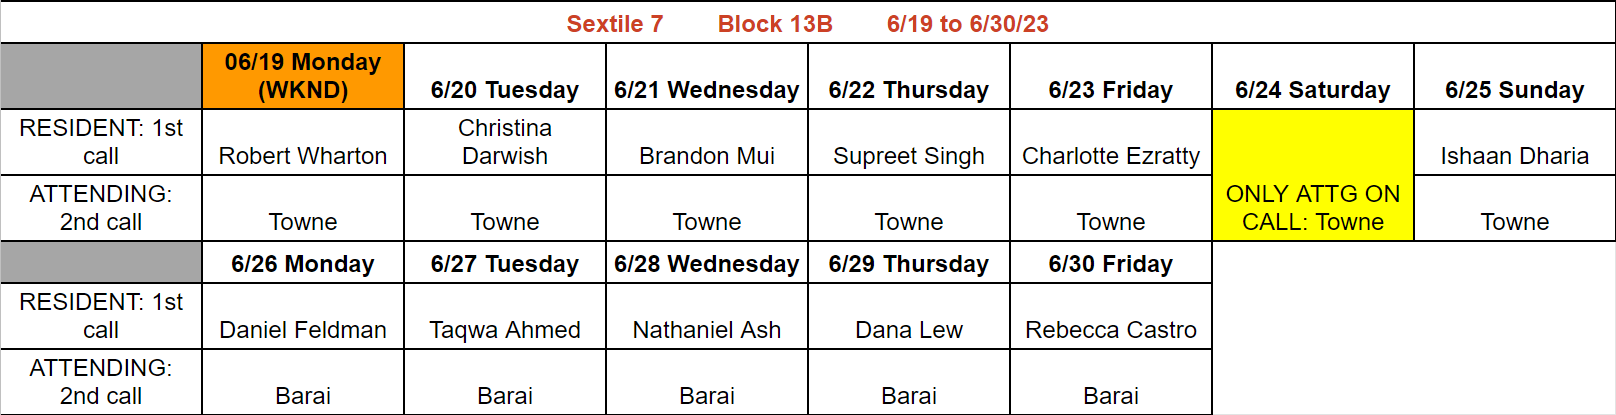 Block 13B - June 19-30, 2023